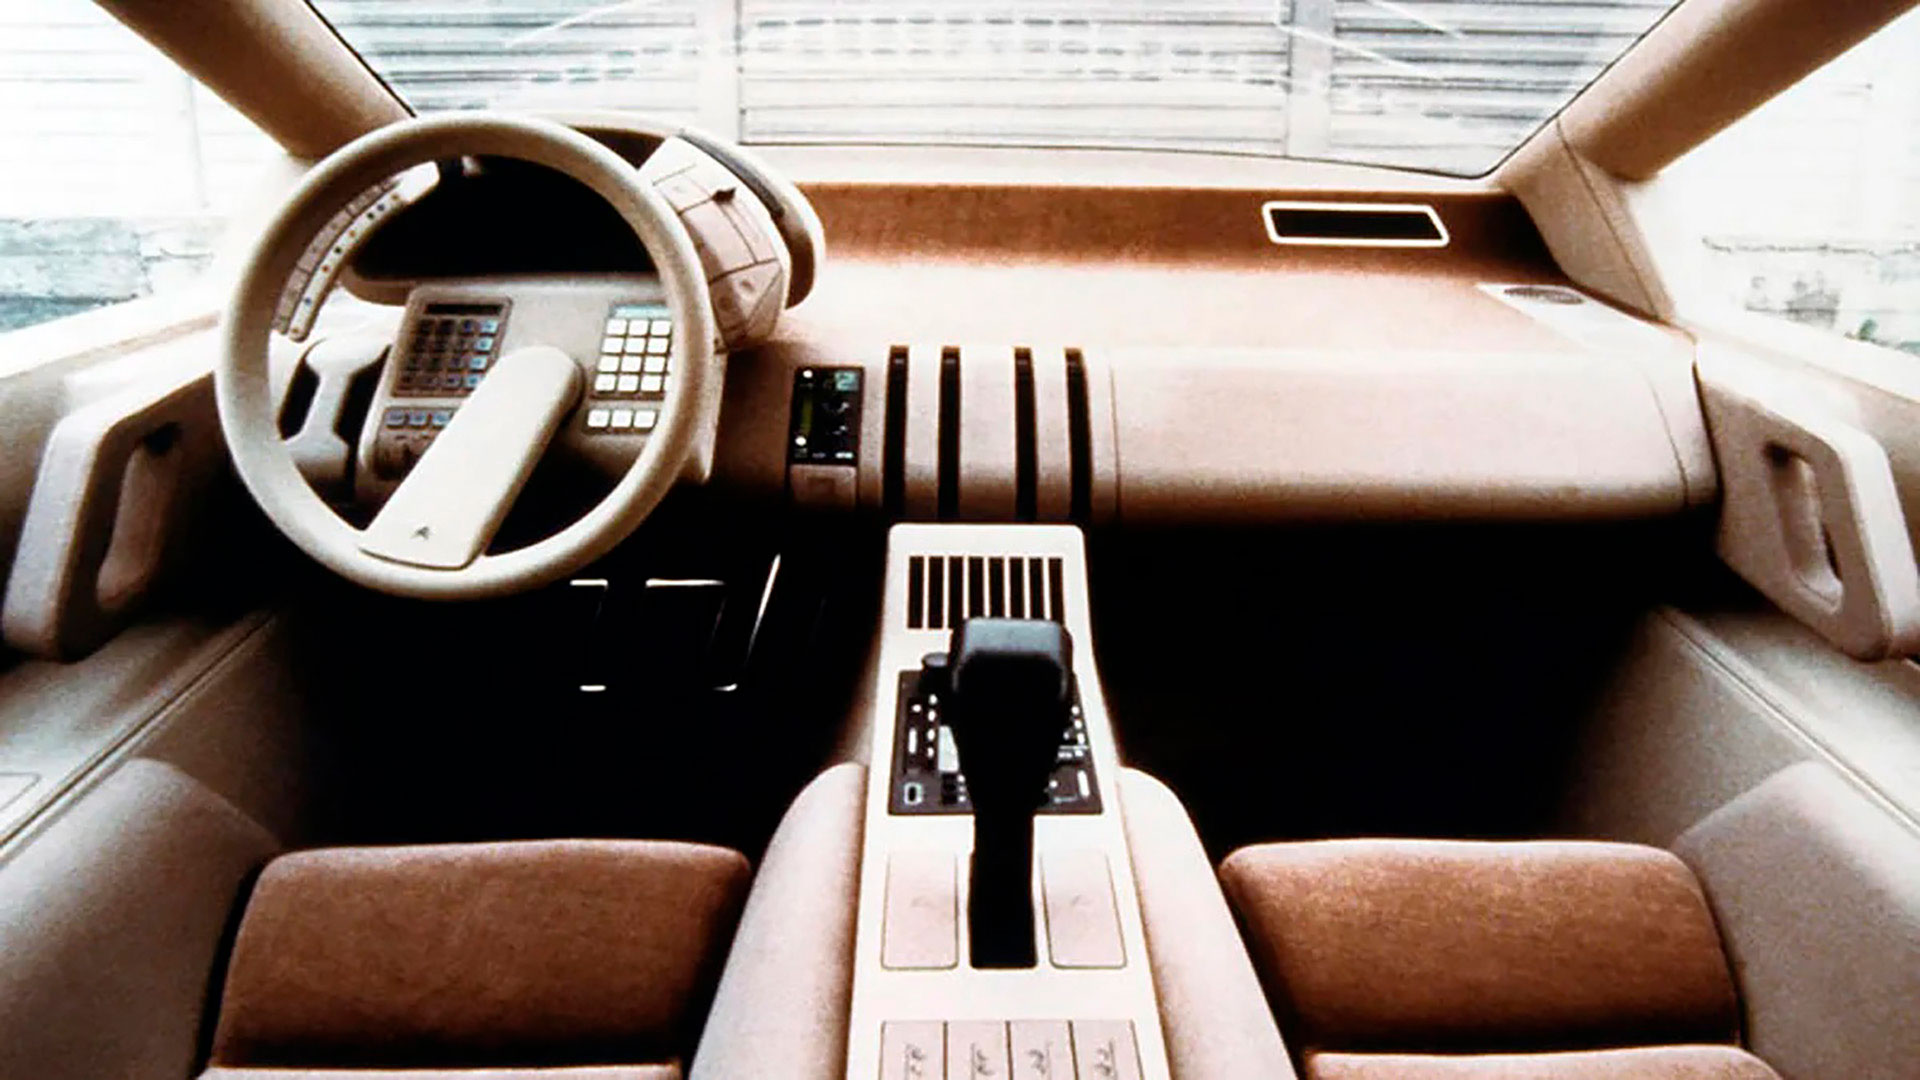 En los años 80 también aparecieron los relojes pulsera digitales. La similitud con los tableros de los autos era notable